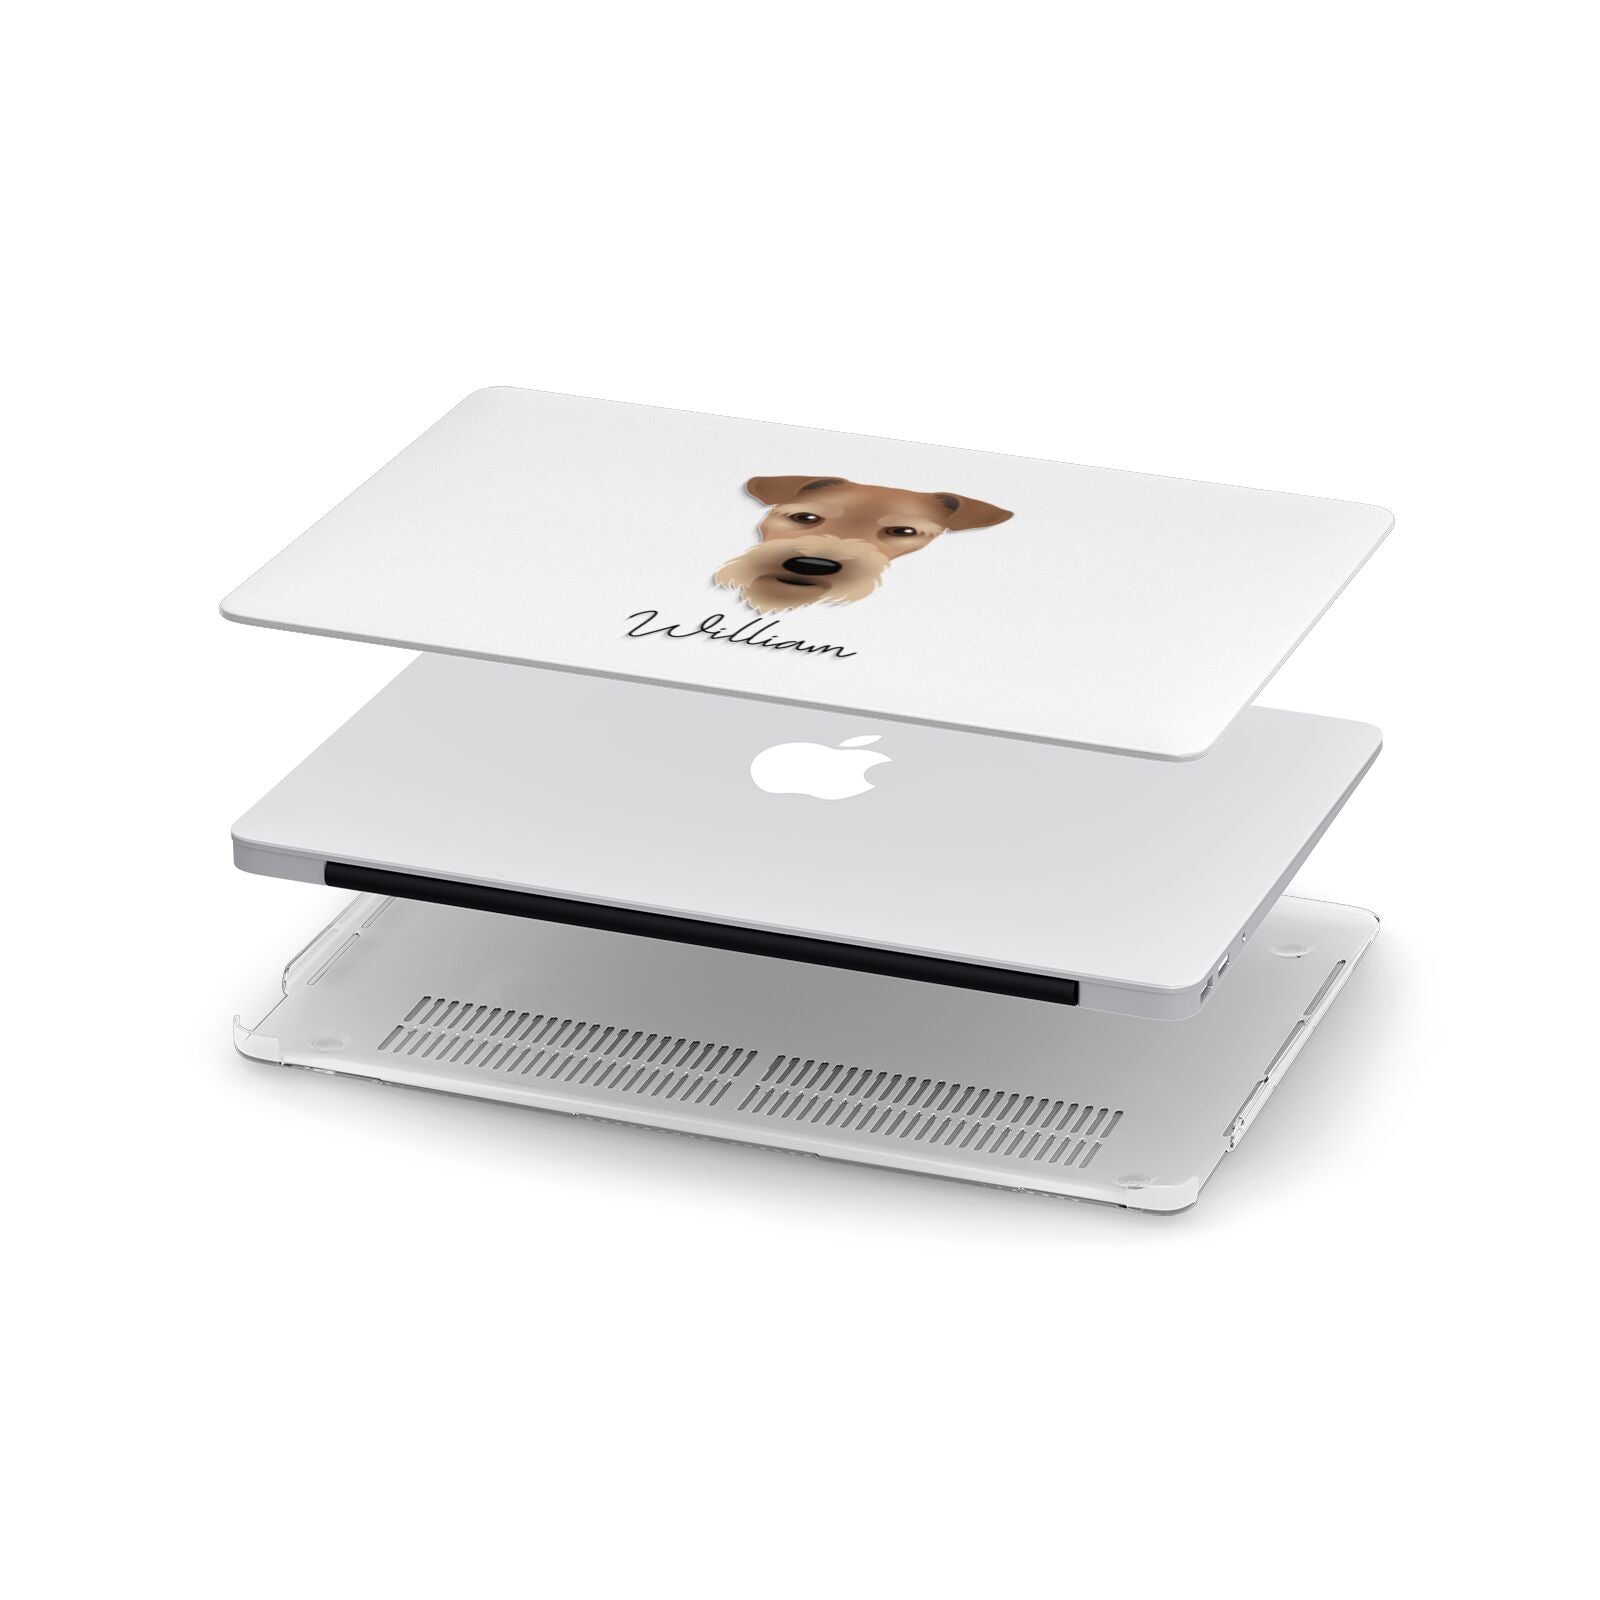 Airedale Terrier Personalised Apple MacBook Case in Detail